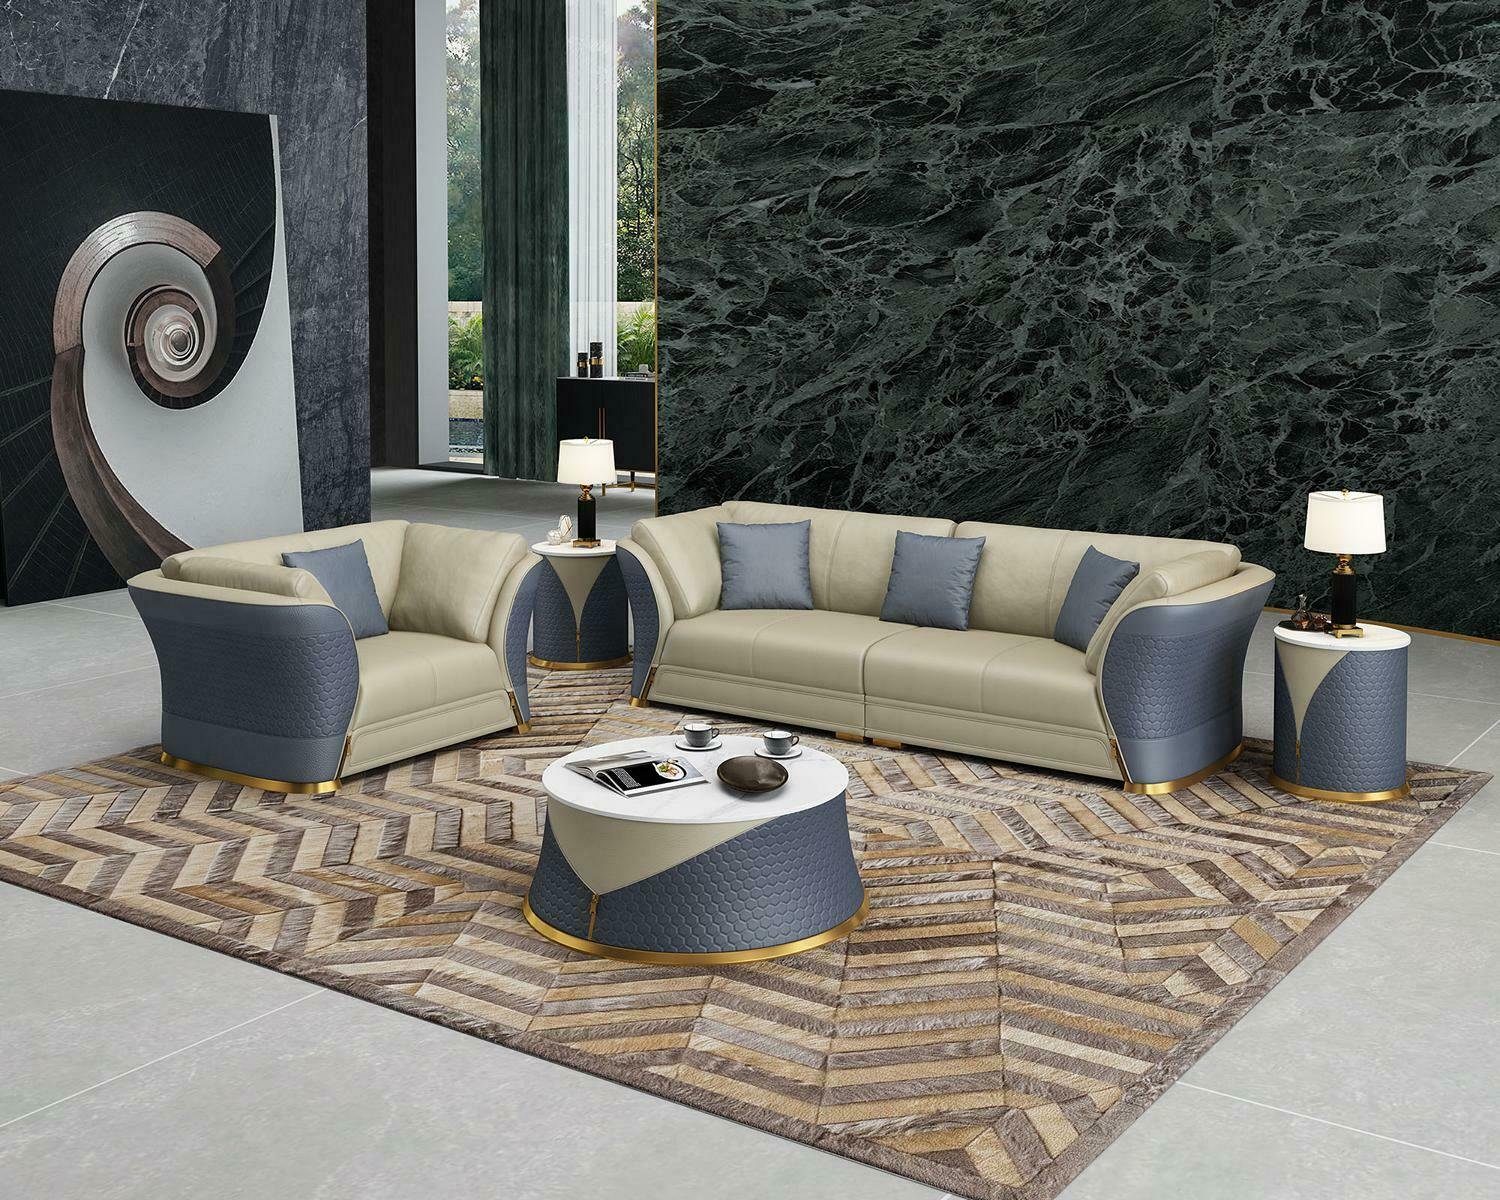 JVmoebel Sofa Moderne Sofagarnitur 3+1 Sitzer Polstermöbel Couchen Neu, Made in Europe Blau/Beige | Alle Sofas